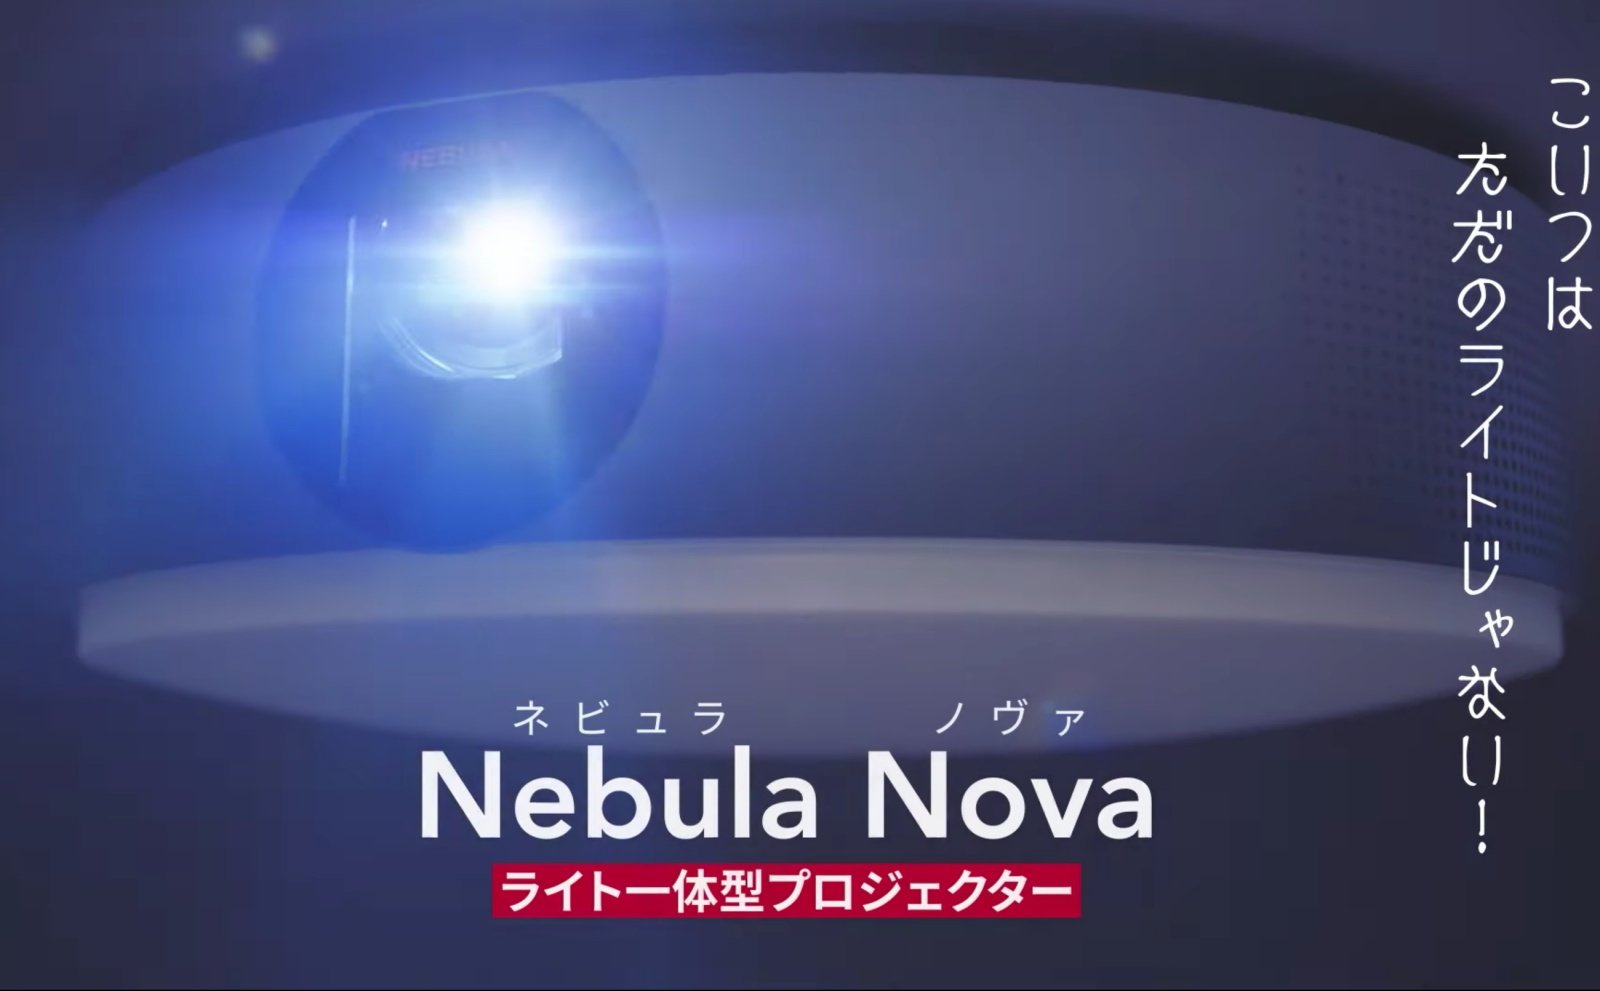 アンカー、シーリングプロジェクター「Nebula Nova」を発売 9万9990円